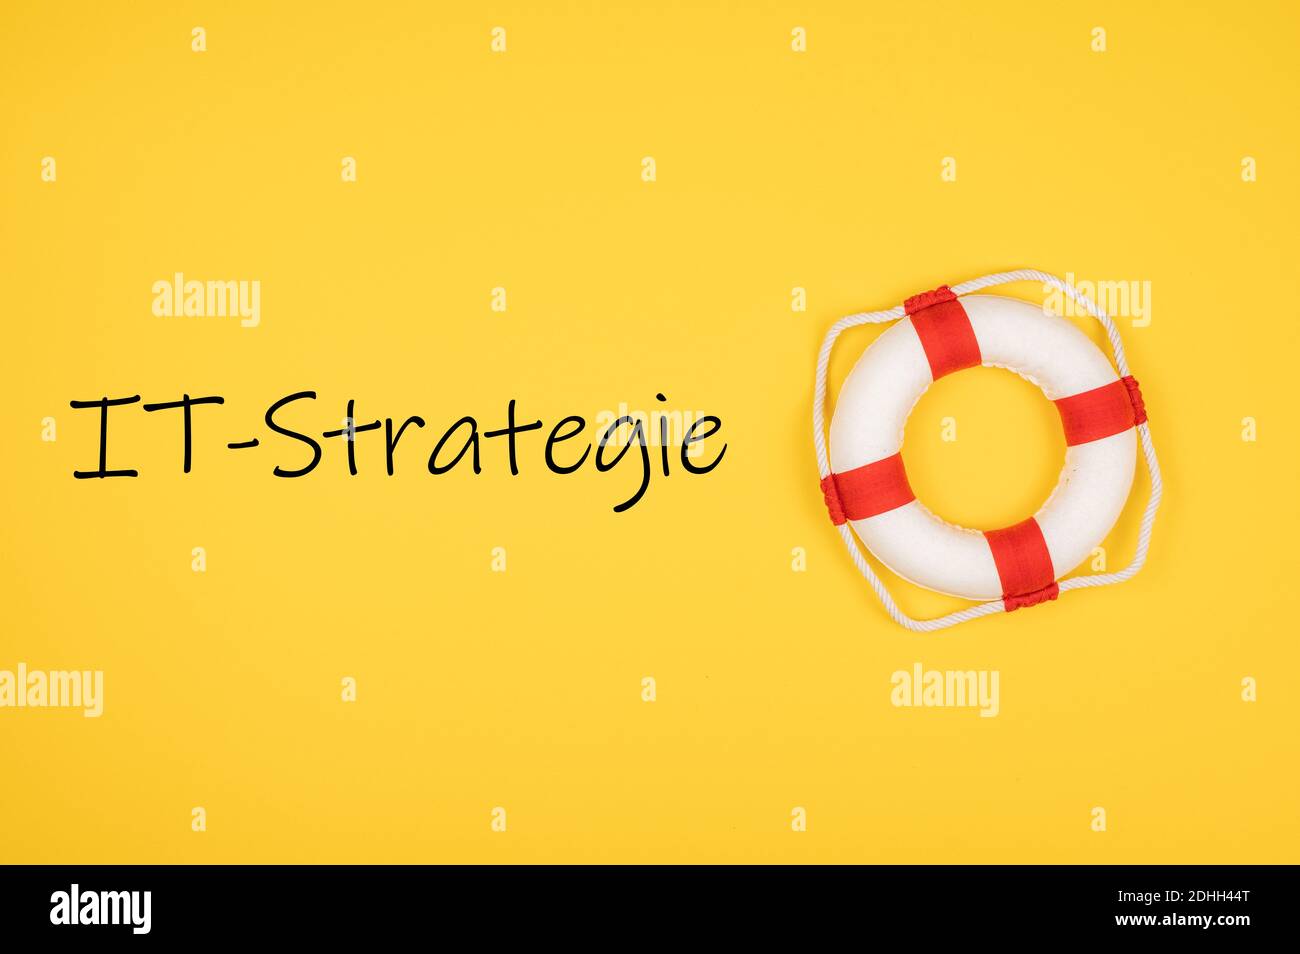 Una vista dall'alto DI IT-Strategie scritta su sfondo giallo con un cerchio di sughero marino Foto Stock